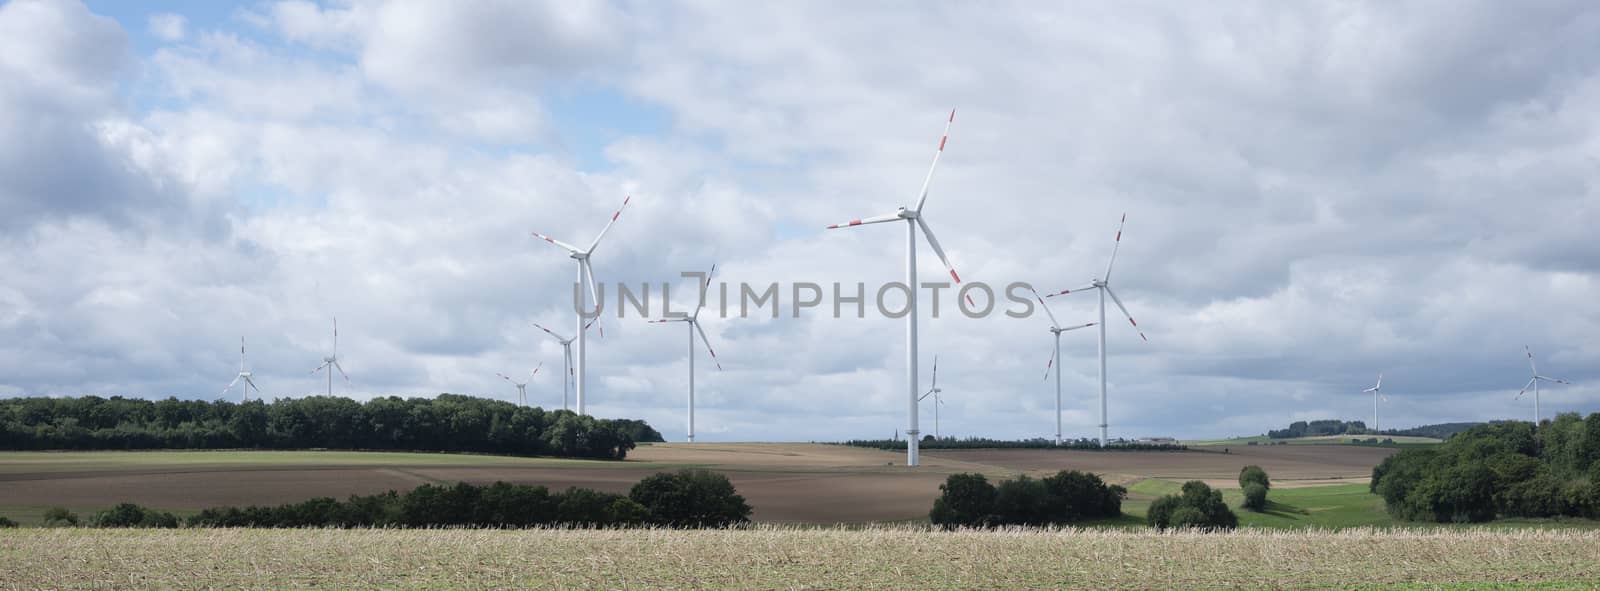 fields and wiind turbines in german eifel by ahavelaar